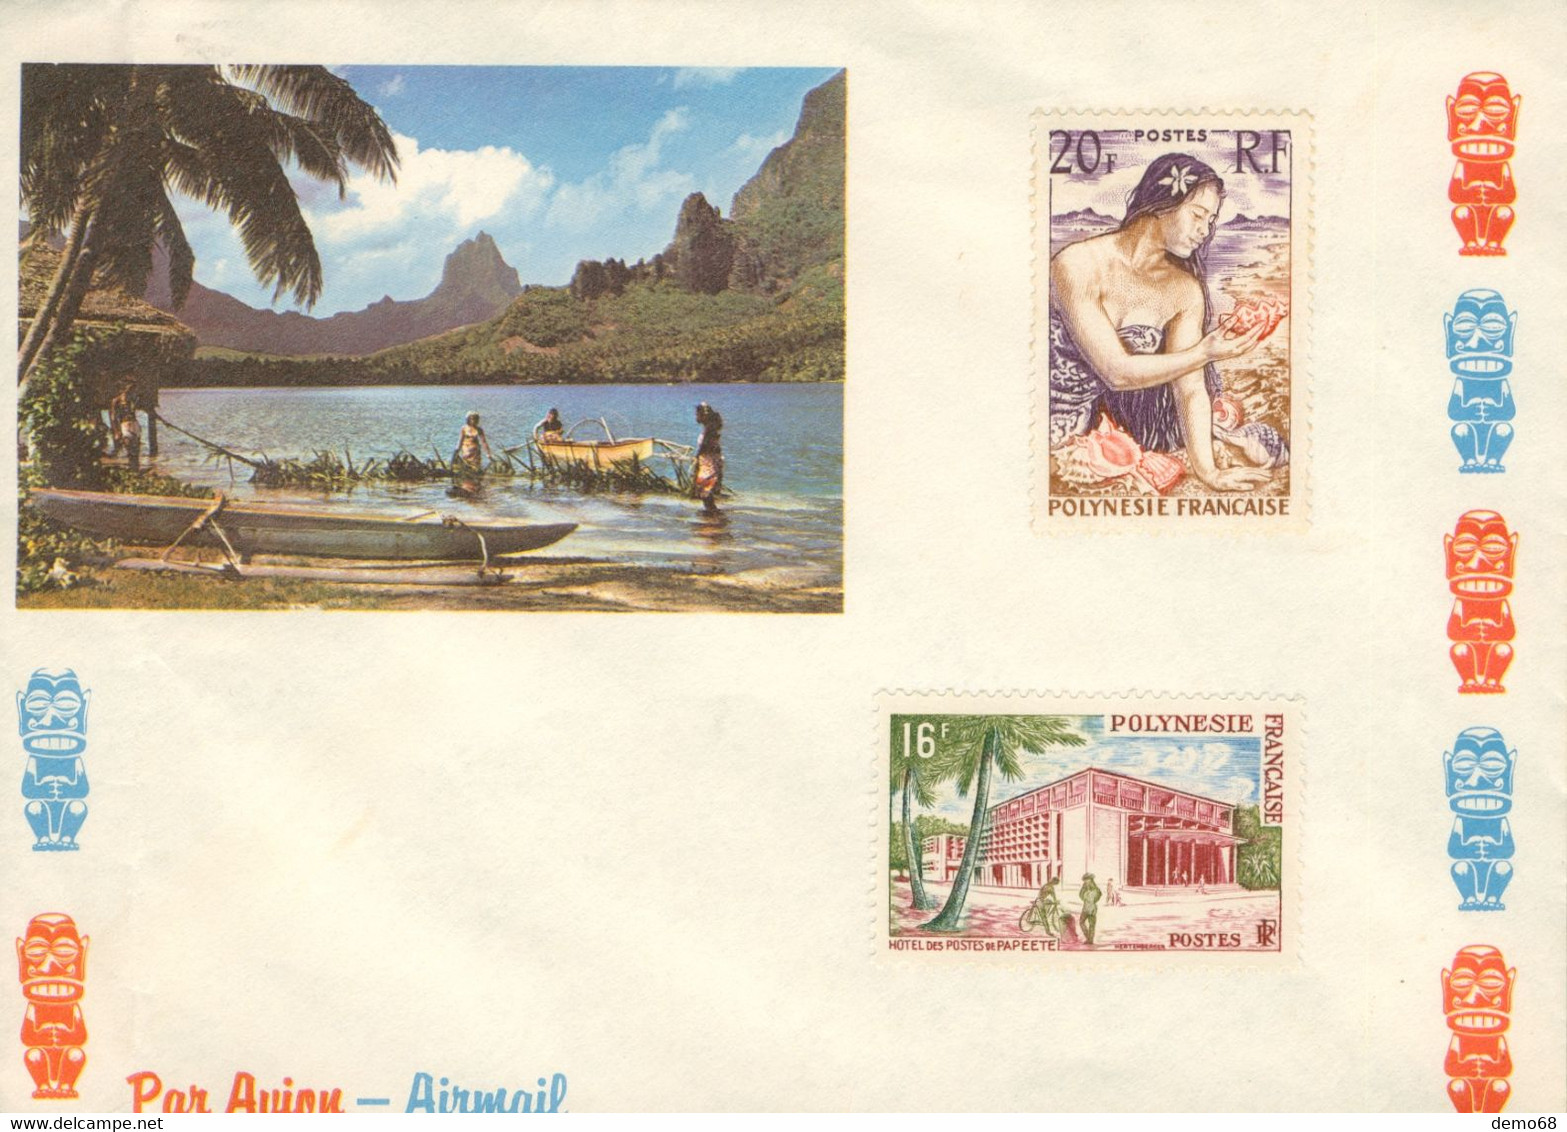 Stamp Timbre Polynésie Française 2 Timbres Neuf Non Oblitérés Poste Aérienne Sur Enveloppe Année ? Papeete - 1960-.... Postfris